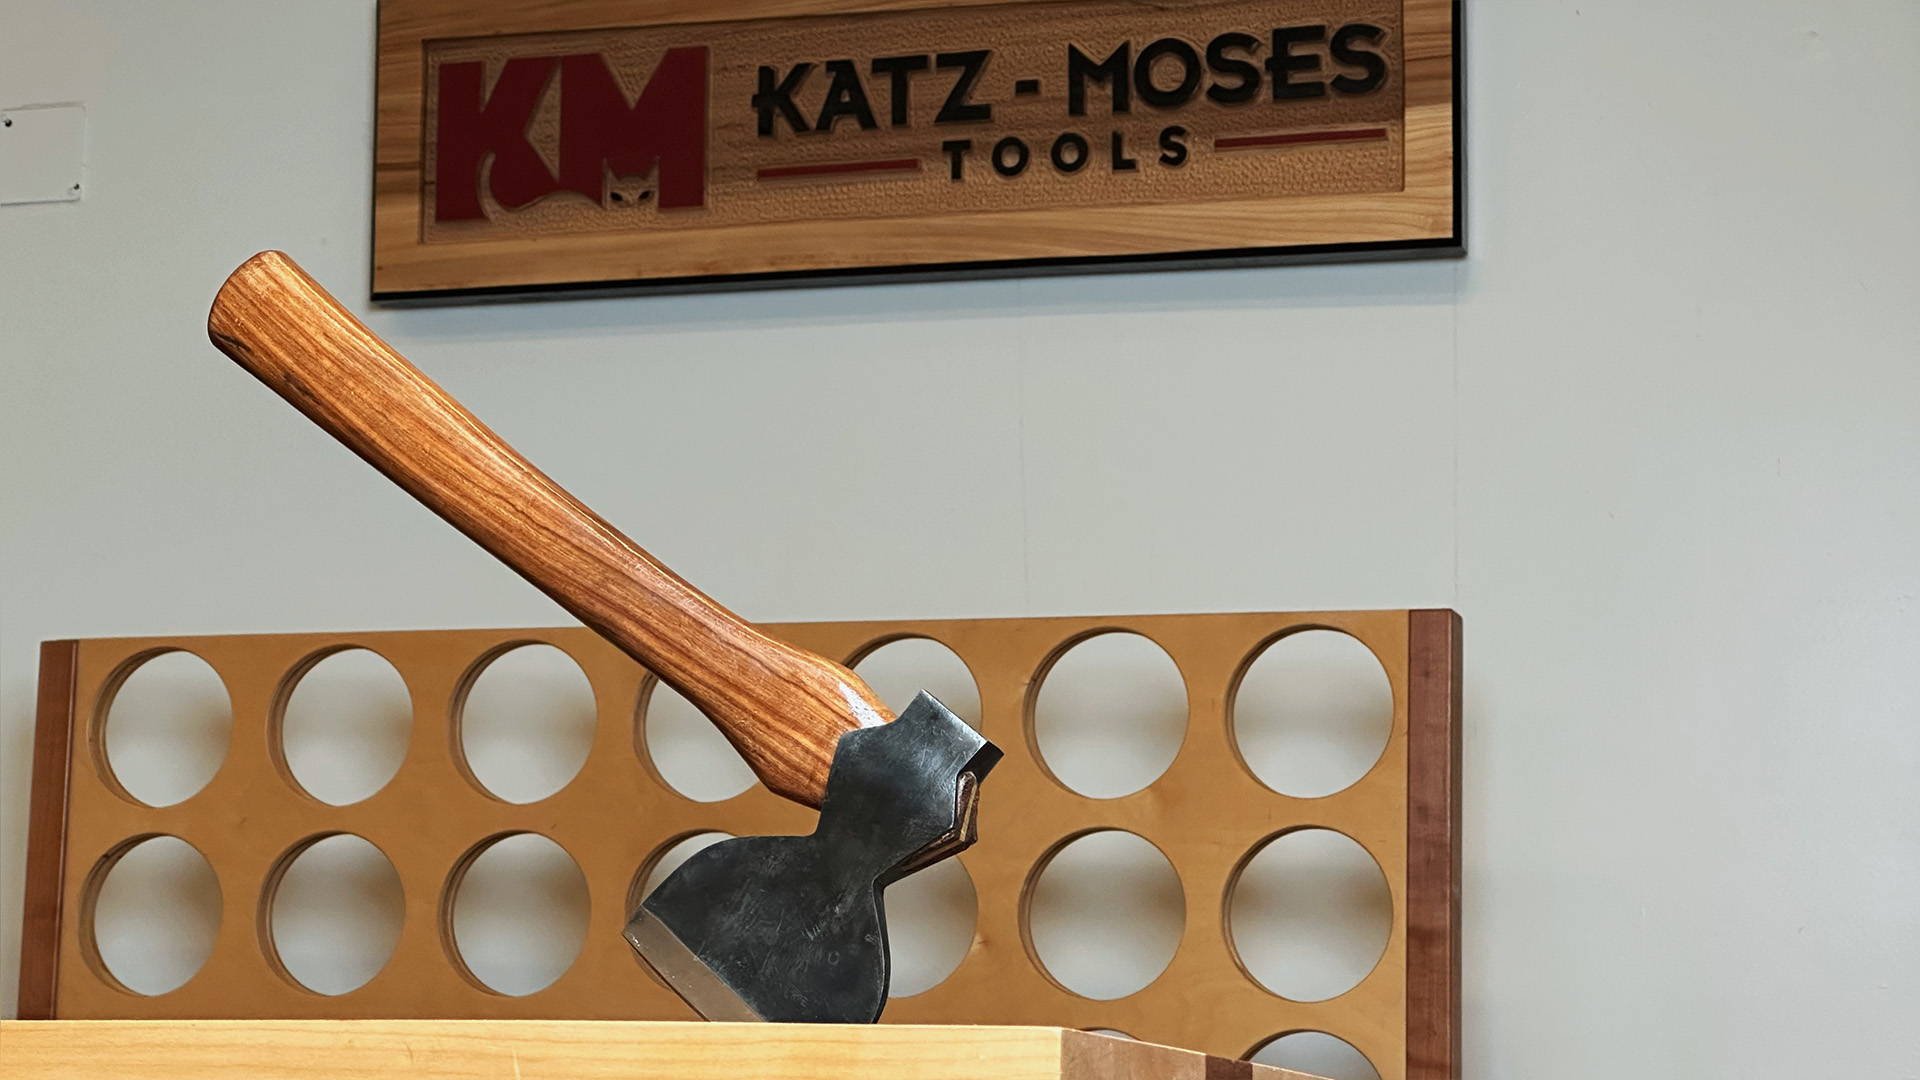 katz moses tools hewing hatchet